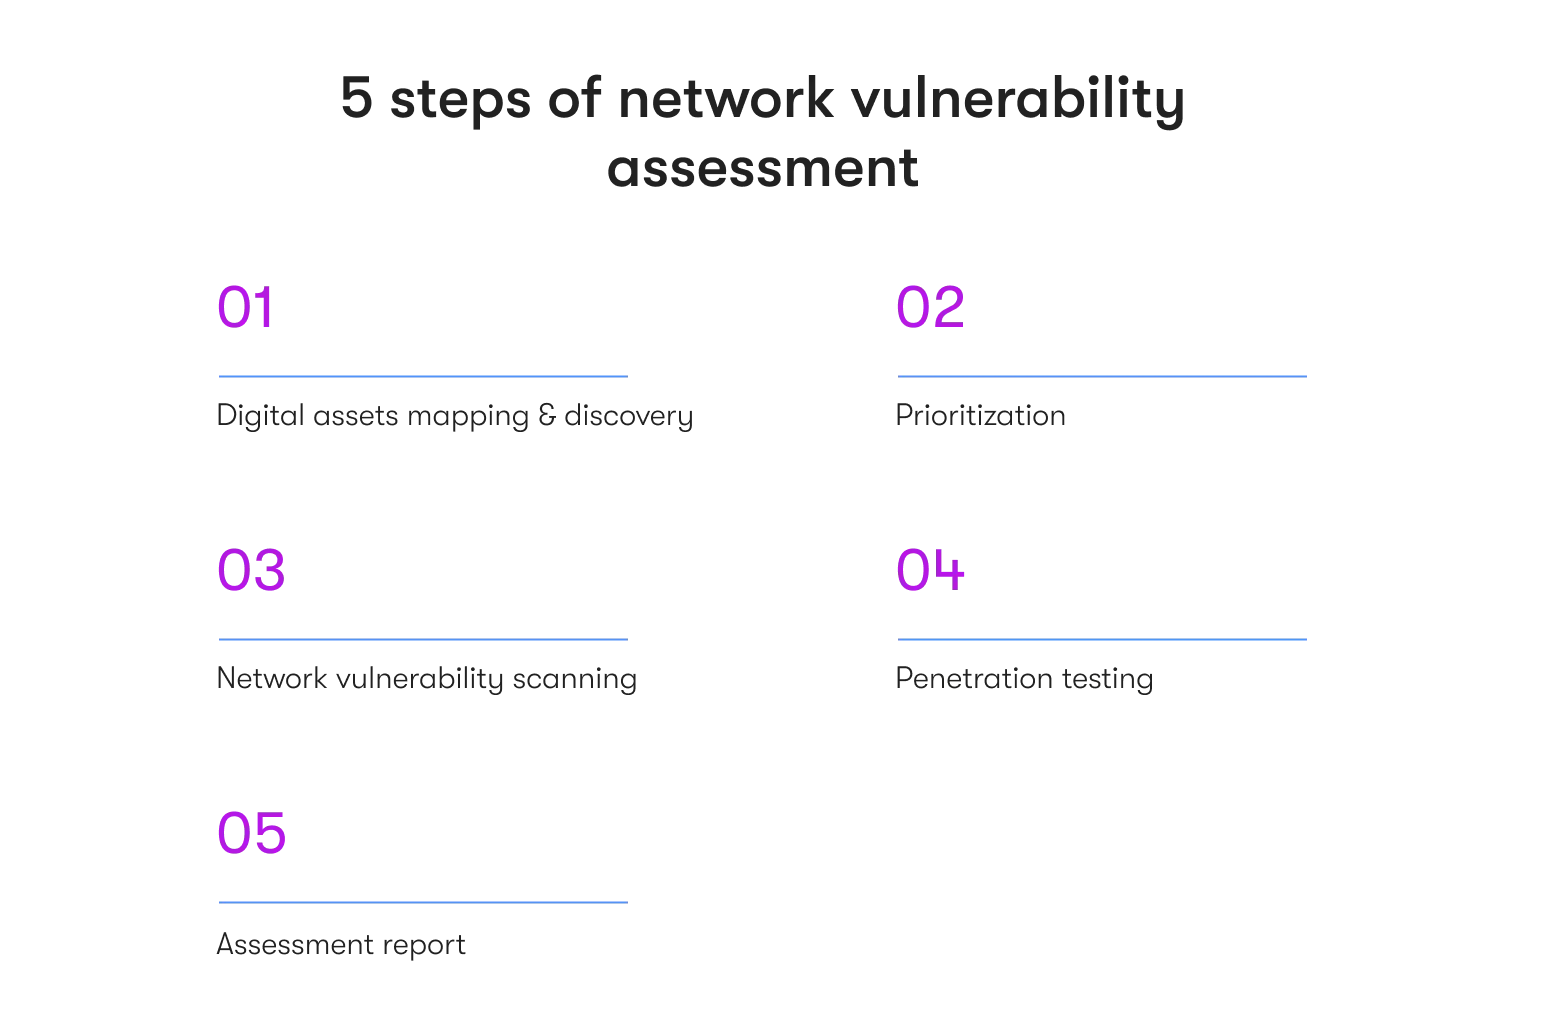 5 steps of network vulnerability assessment